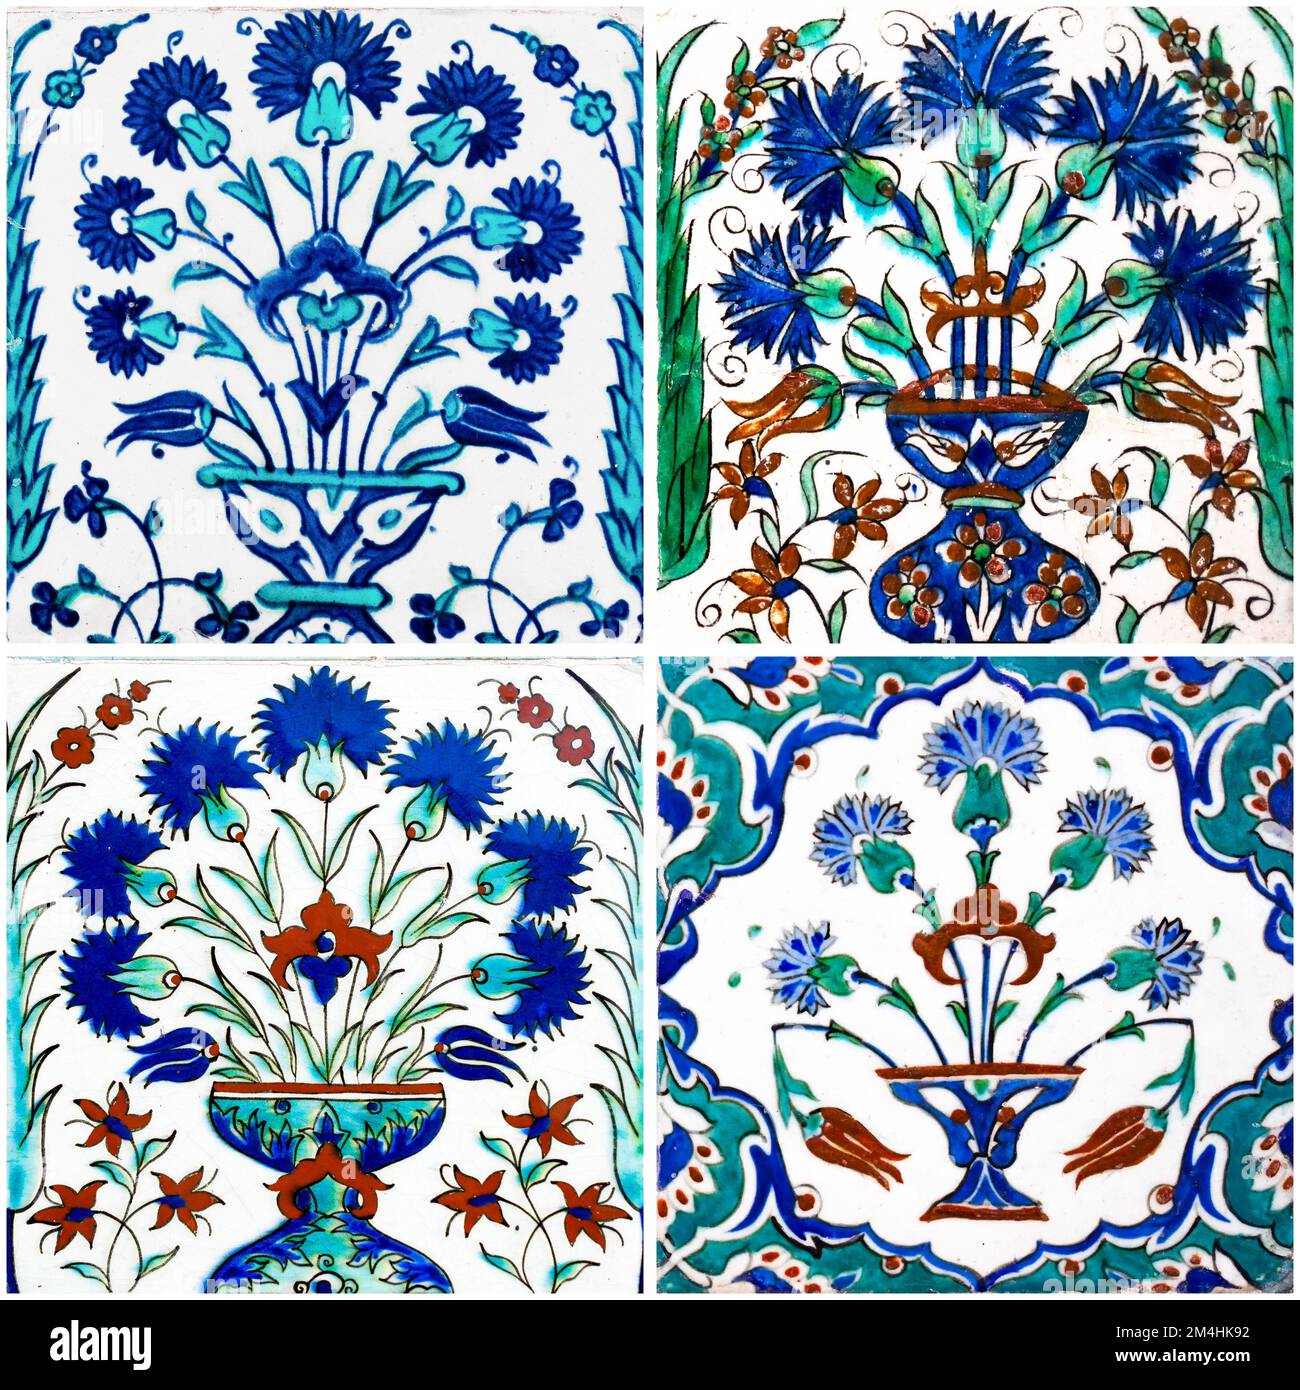 Set di tessere turche con motivo a vaso floreale dipinte a mano dell'Harem Imperiale Ottomano nel Palazzo Topkapi, Istanbul, Turchia. Foto Stock